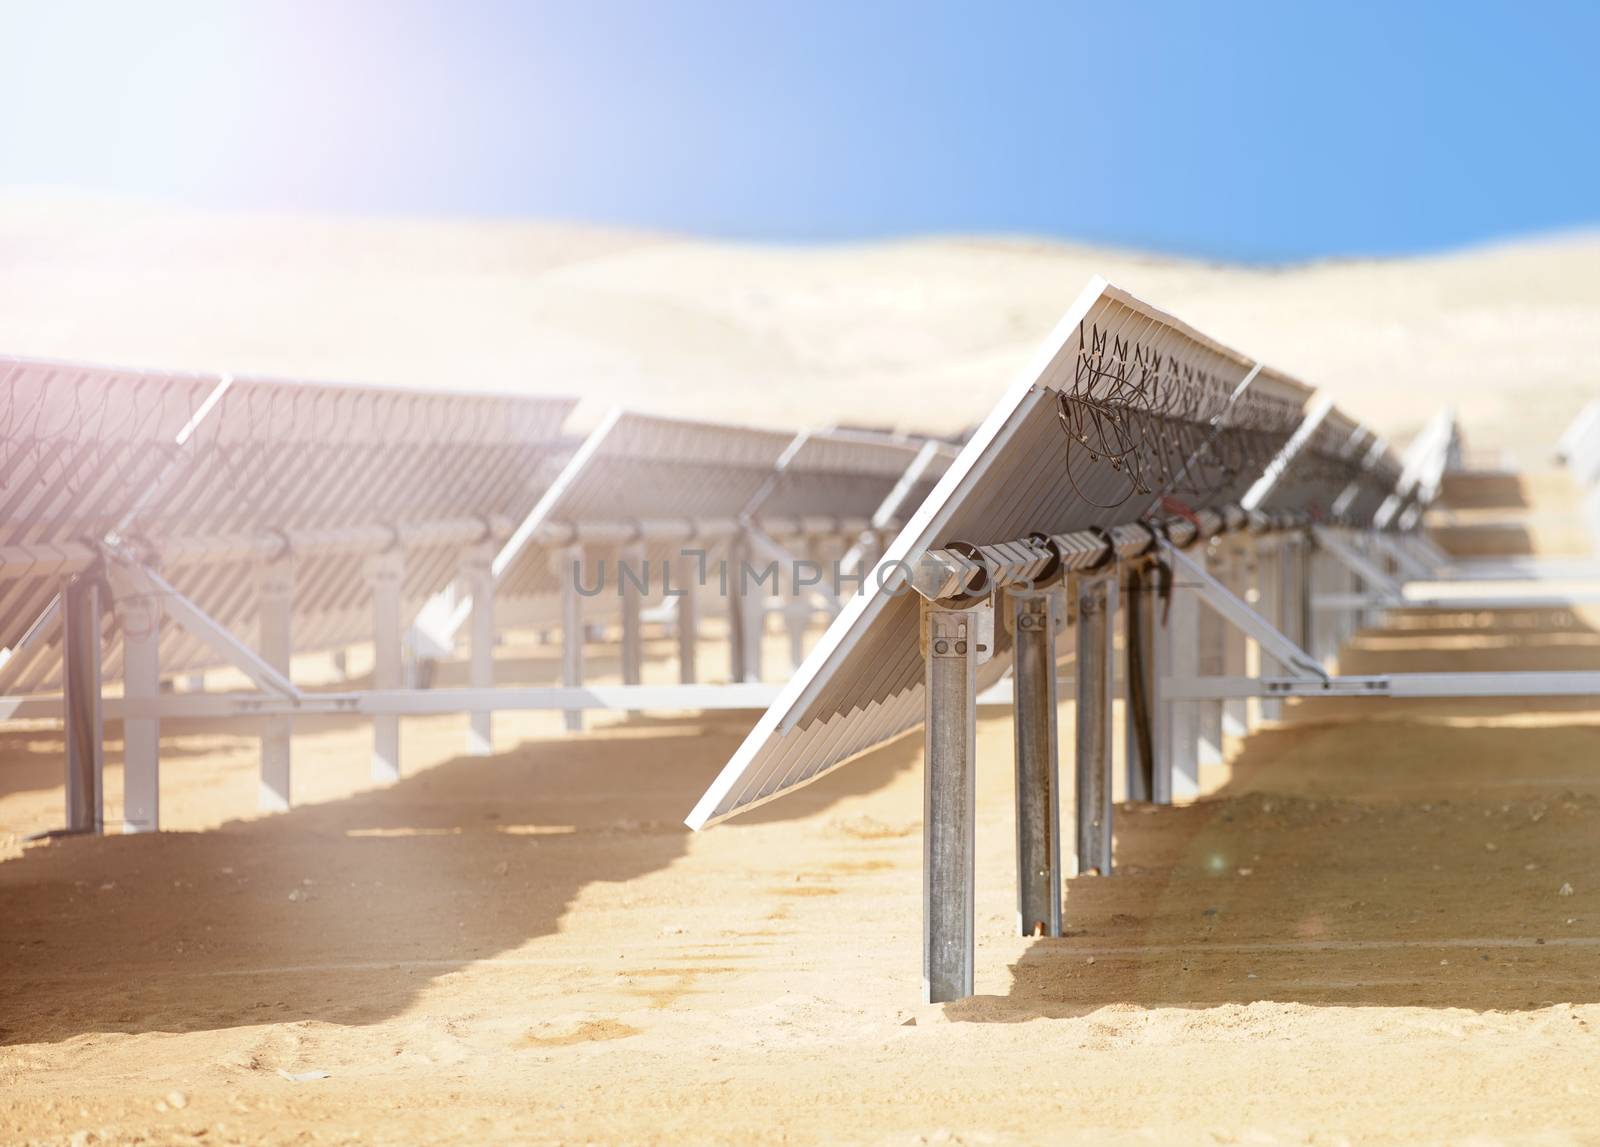 solar batteries in the desert by MegaArt